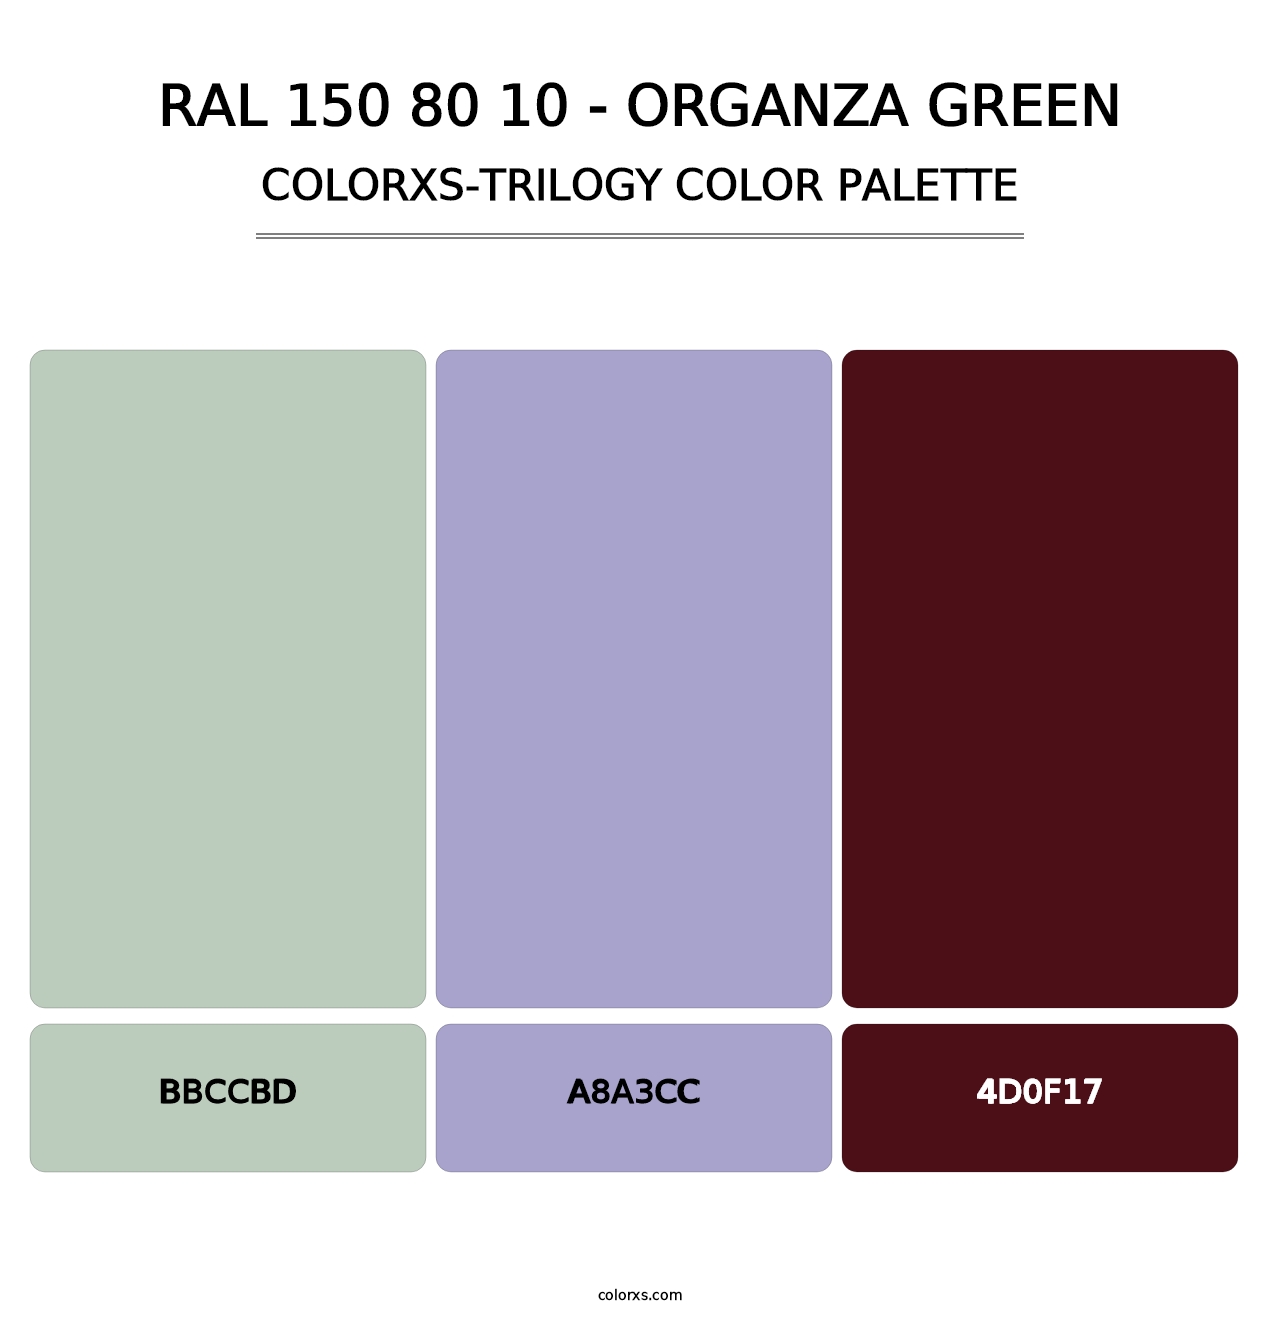 RAL 150 80 10 - Organza Green - Colorxs Trilogy Palette